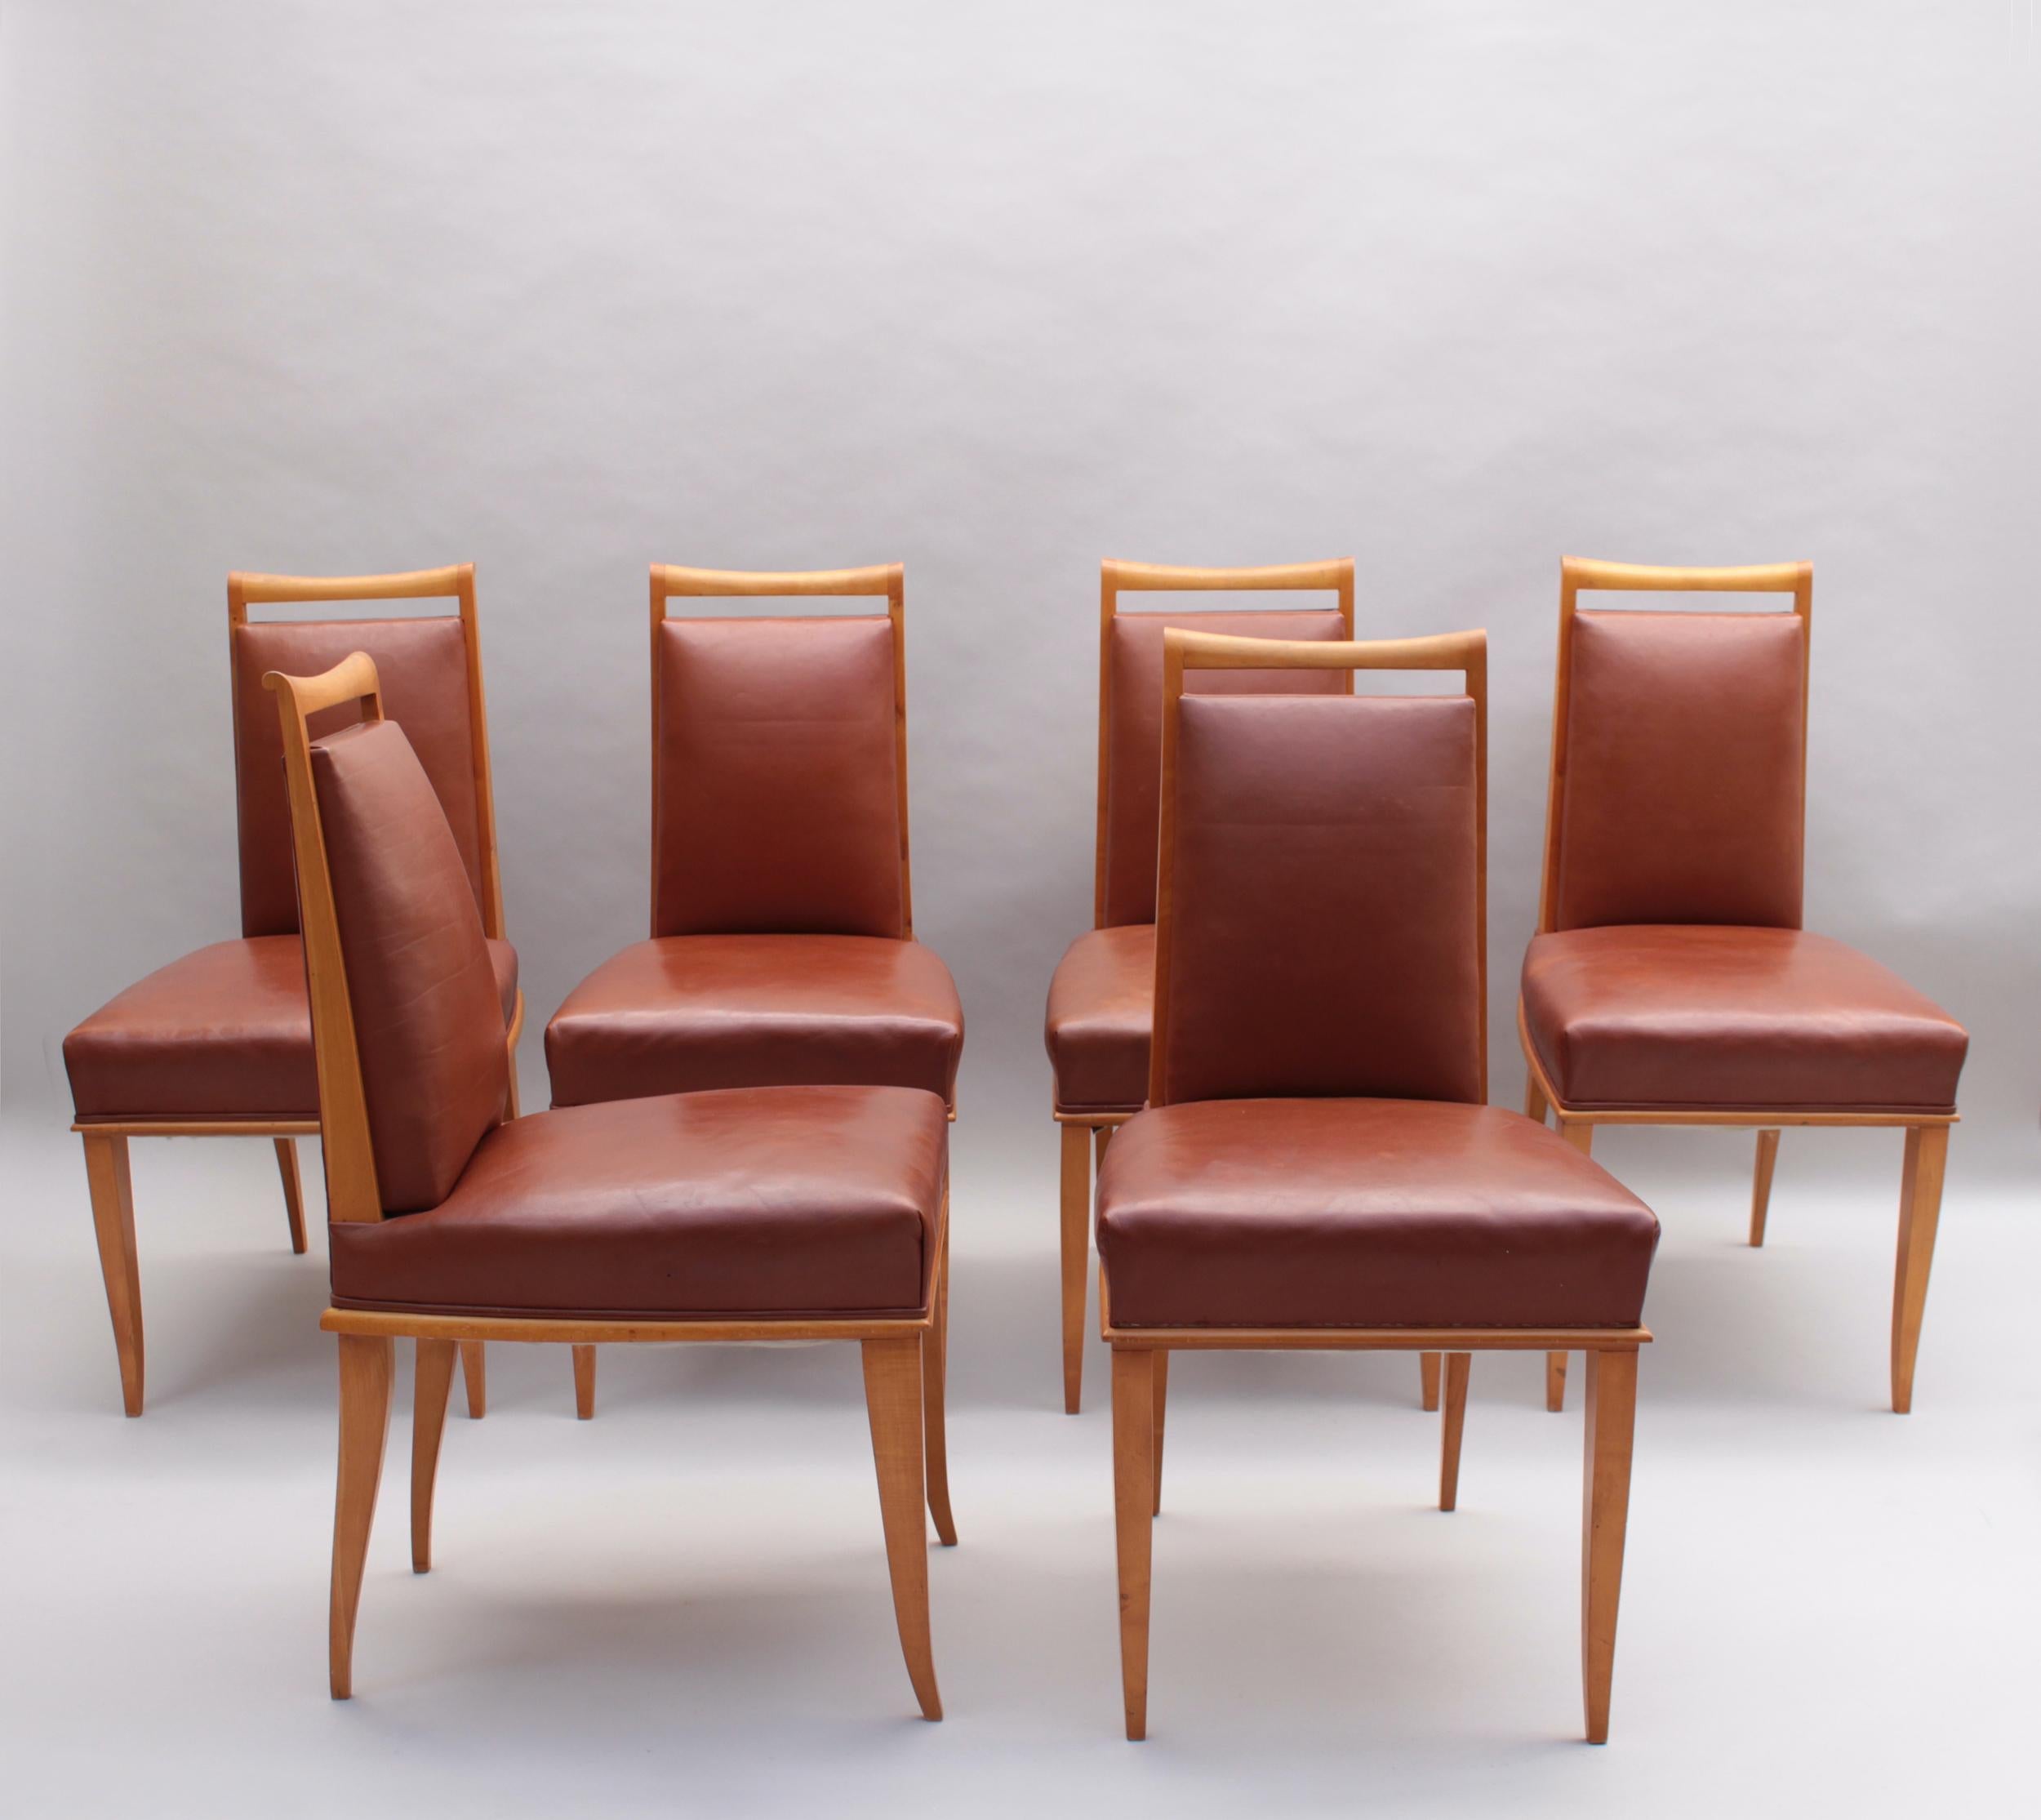 Etienne-Henri Martin - Ensemble de 6 chaises de salle à manger des années 1930 en sycomore massif avec leur revêtement en cuir d'origine.
Documenté